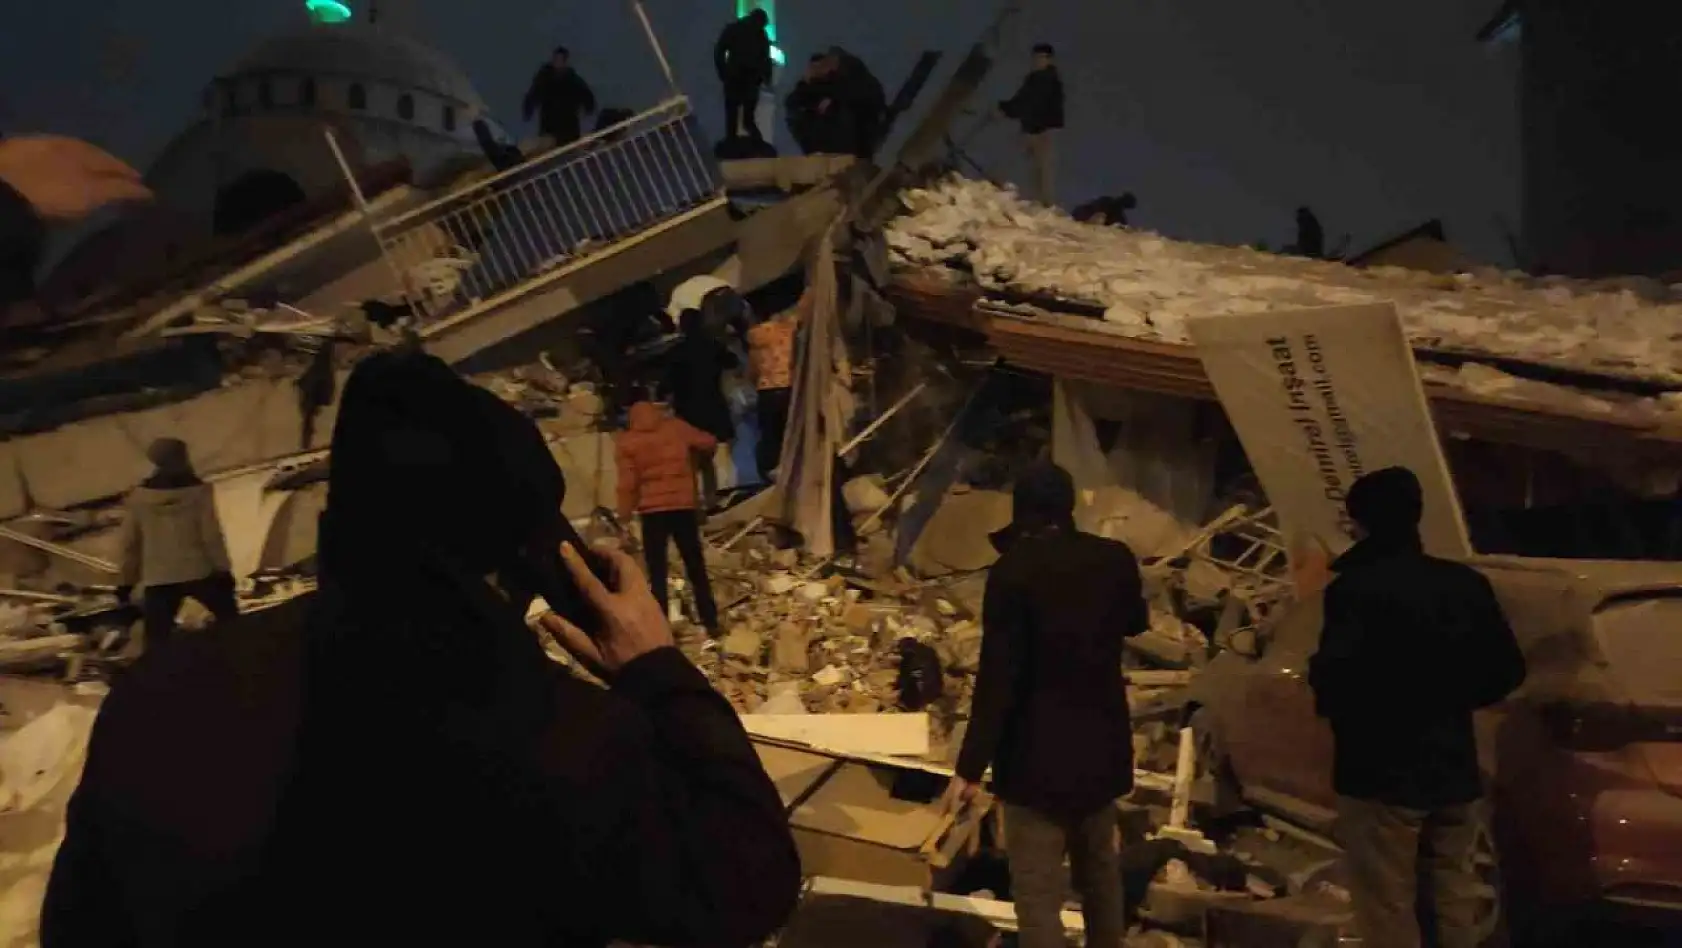 Malatya'da çok sayıda bina çöktü, enkazda aramalar sürüyor